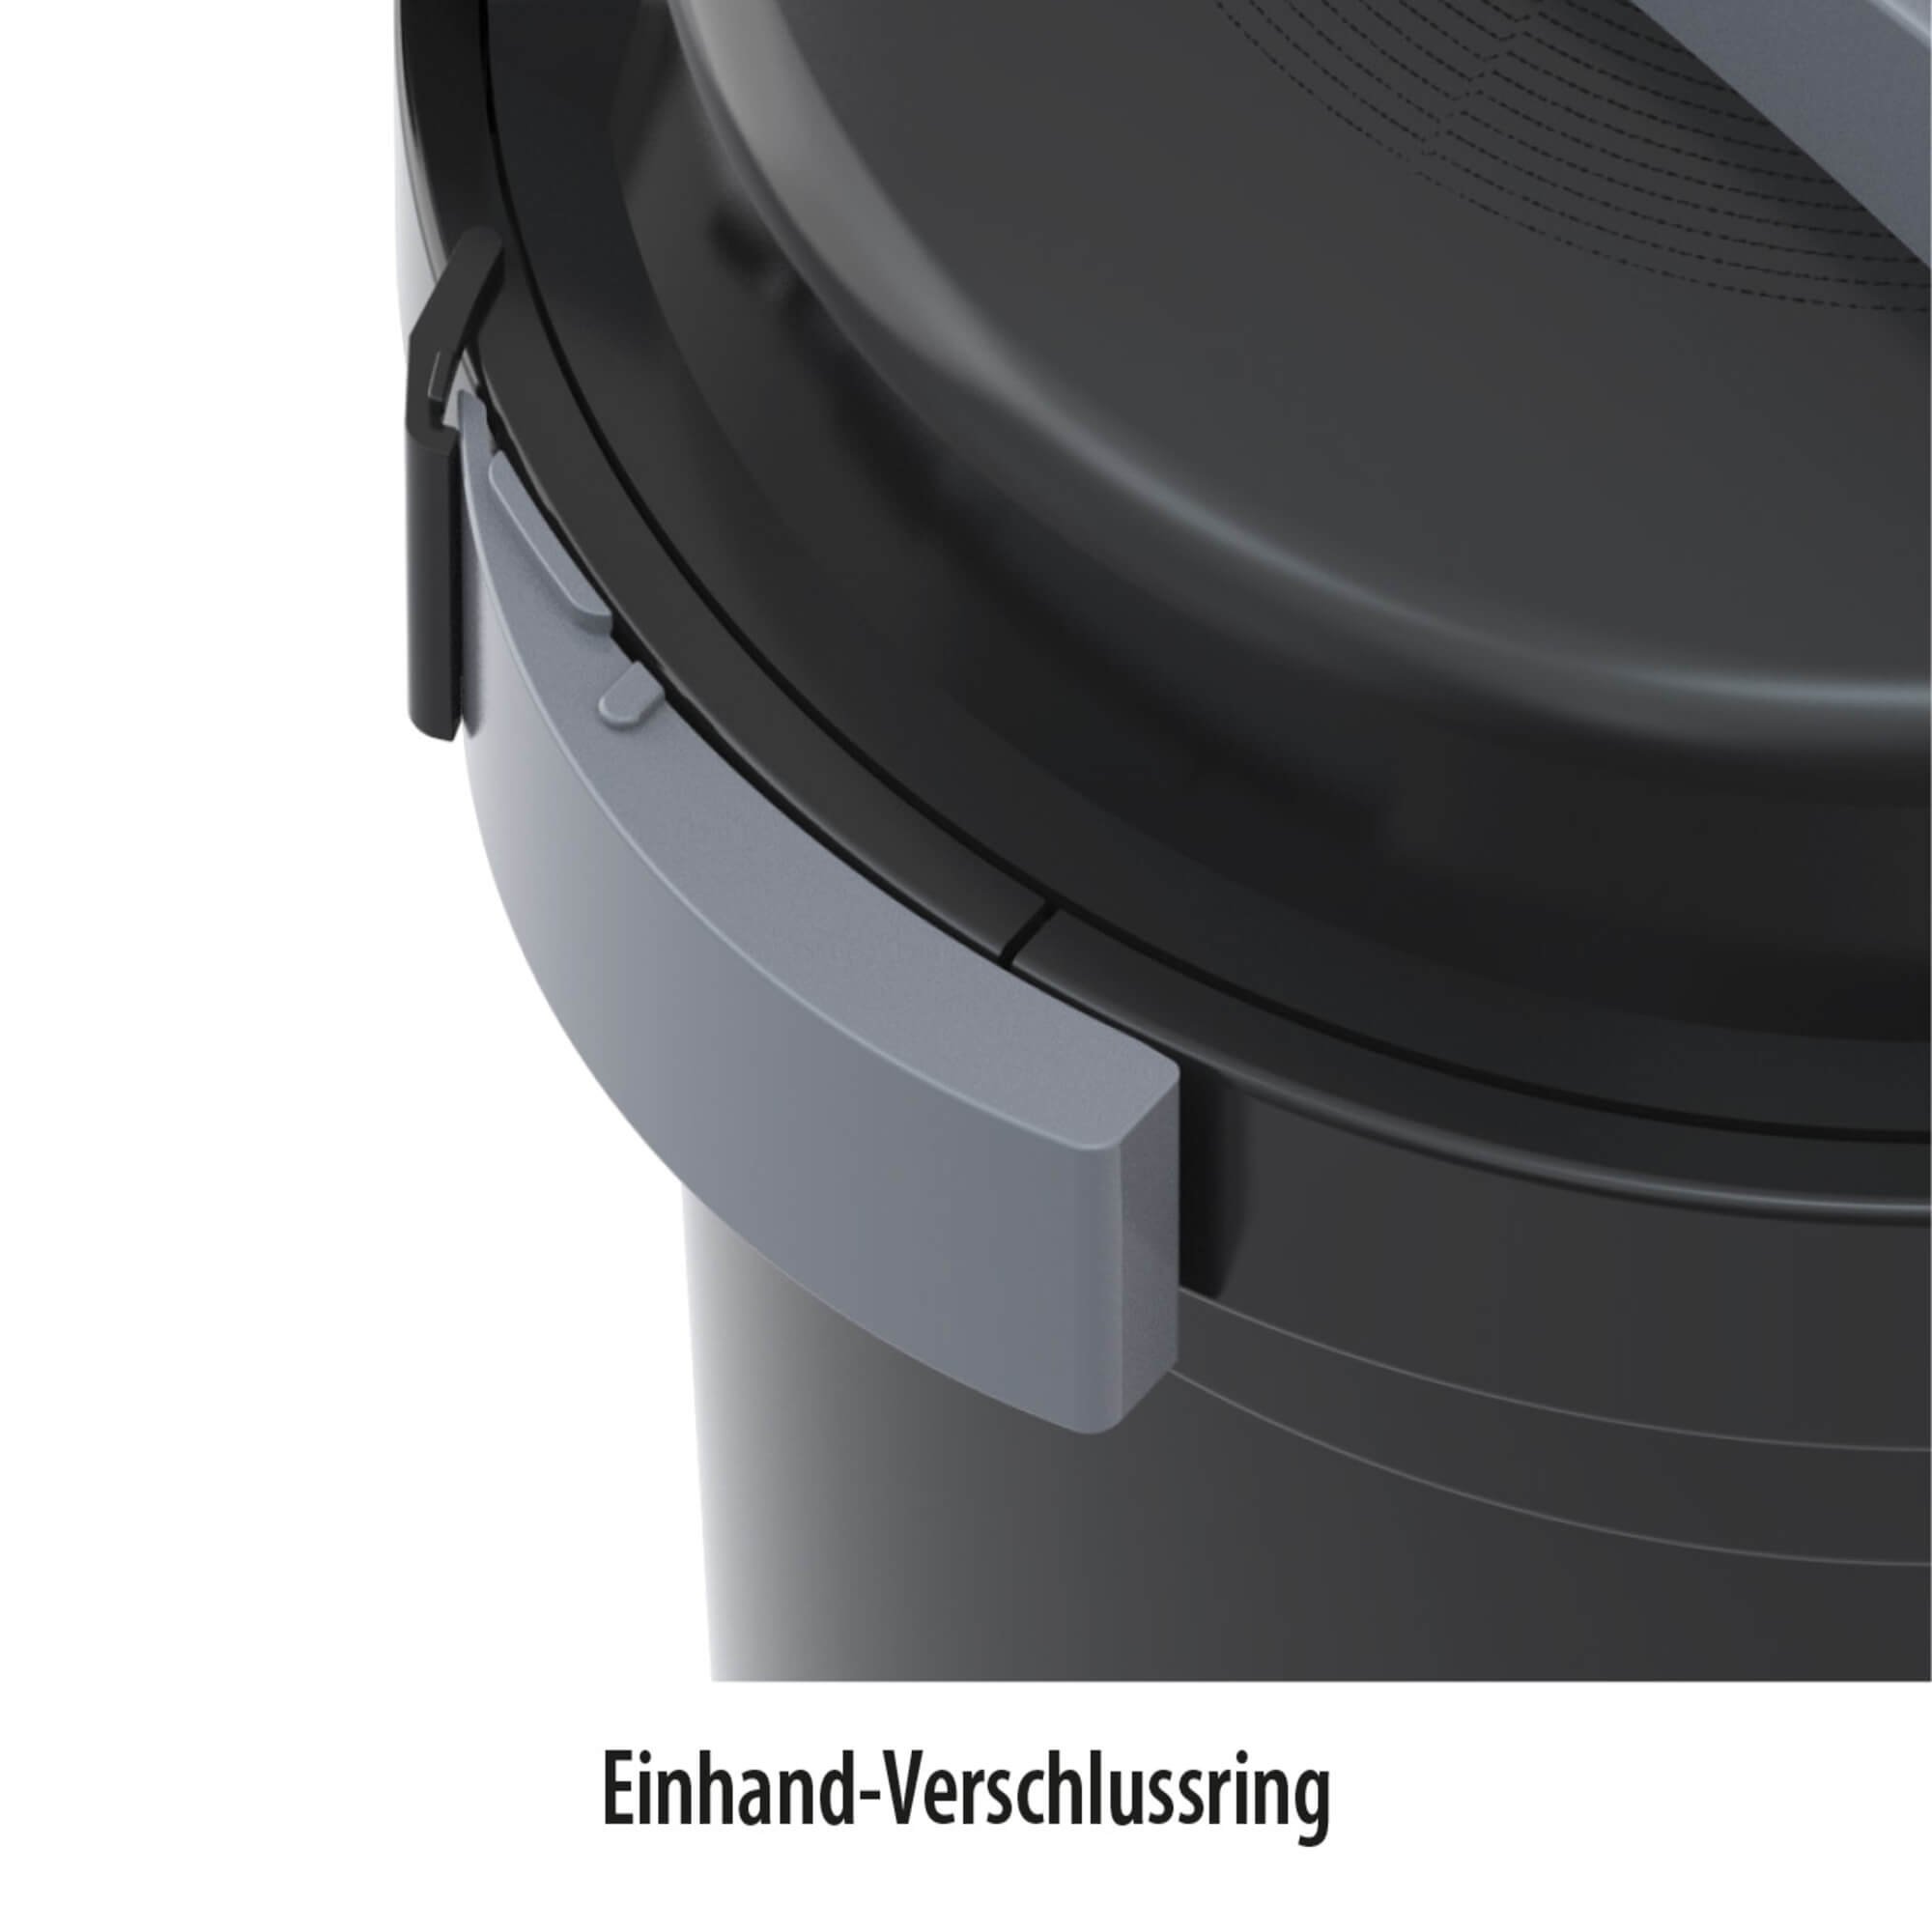 Heissner Druckfilter Set FPU10000-00 inkl. 11 Watt UV-C Teichkärer Teichpumpe und Anschlussschlauch